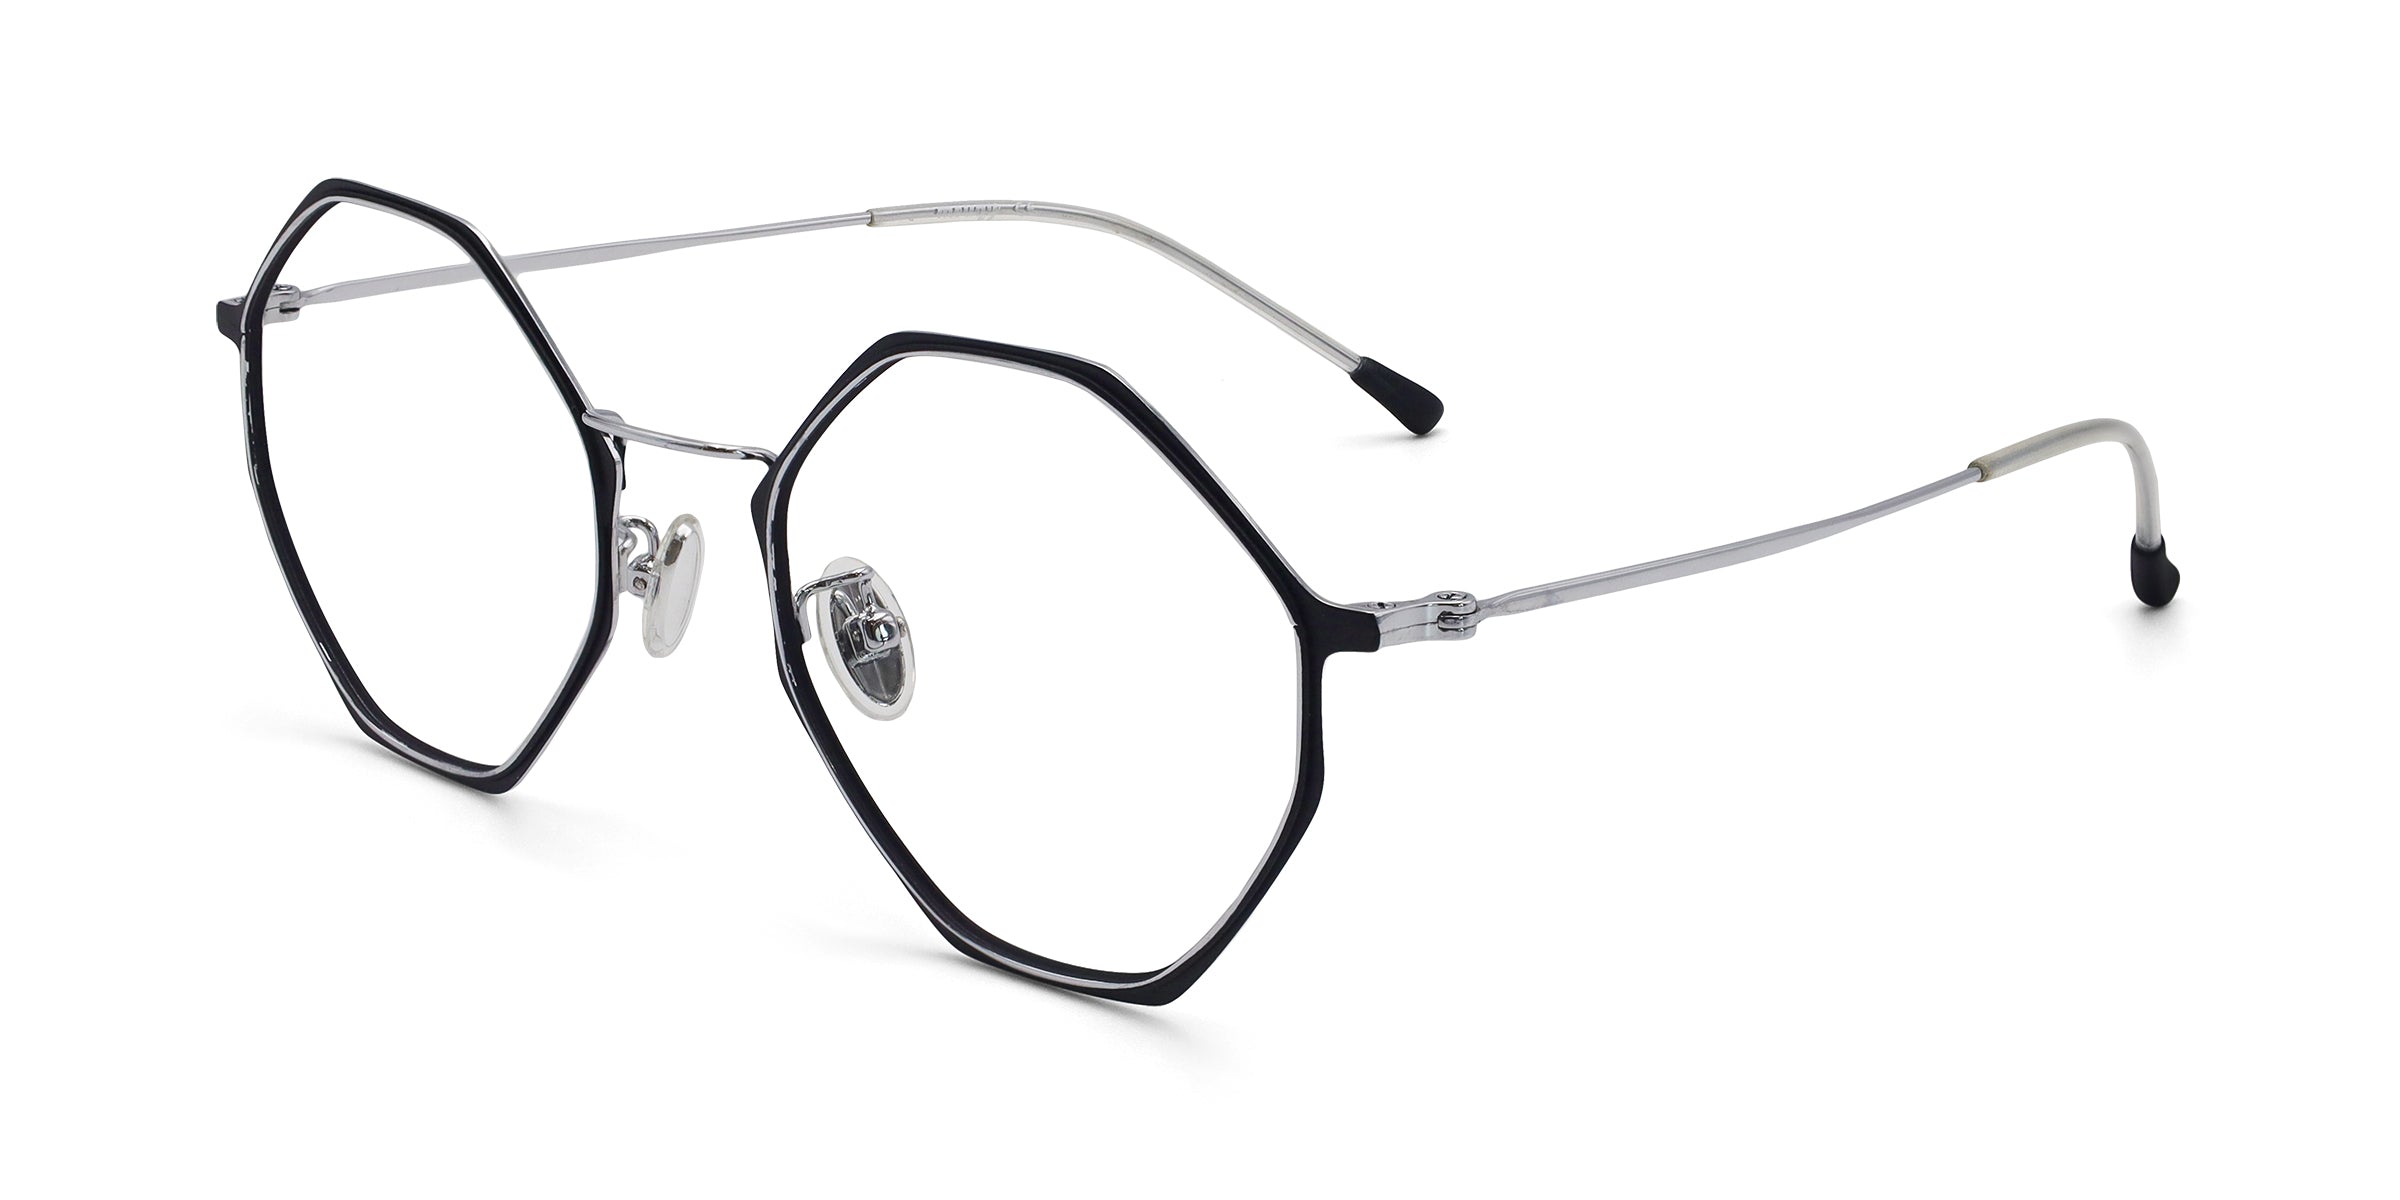 ashley geometric black silver eyeglasses frames angled view